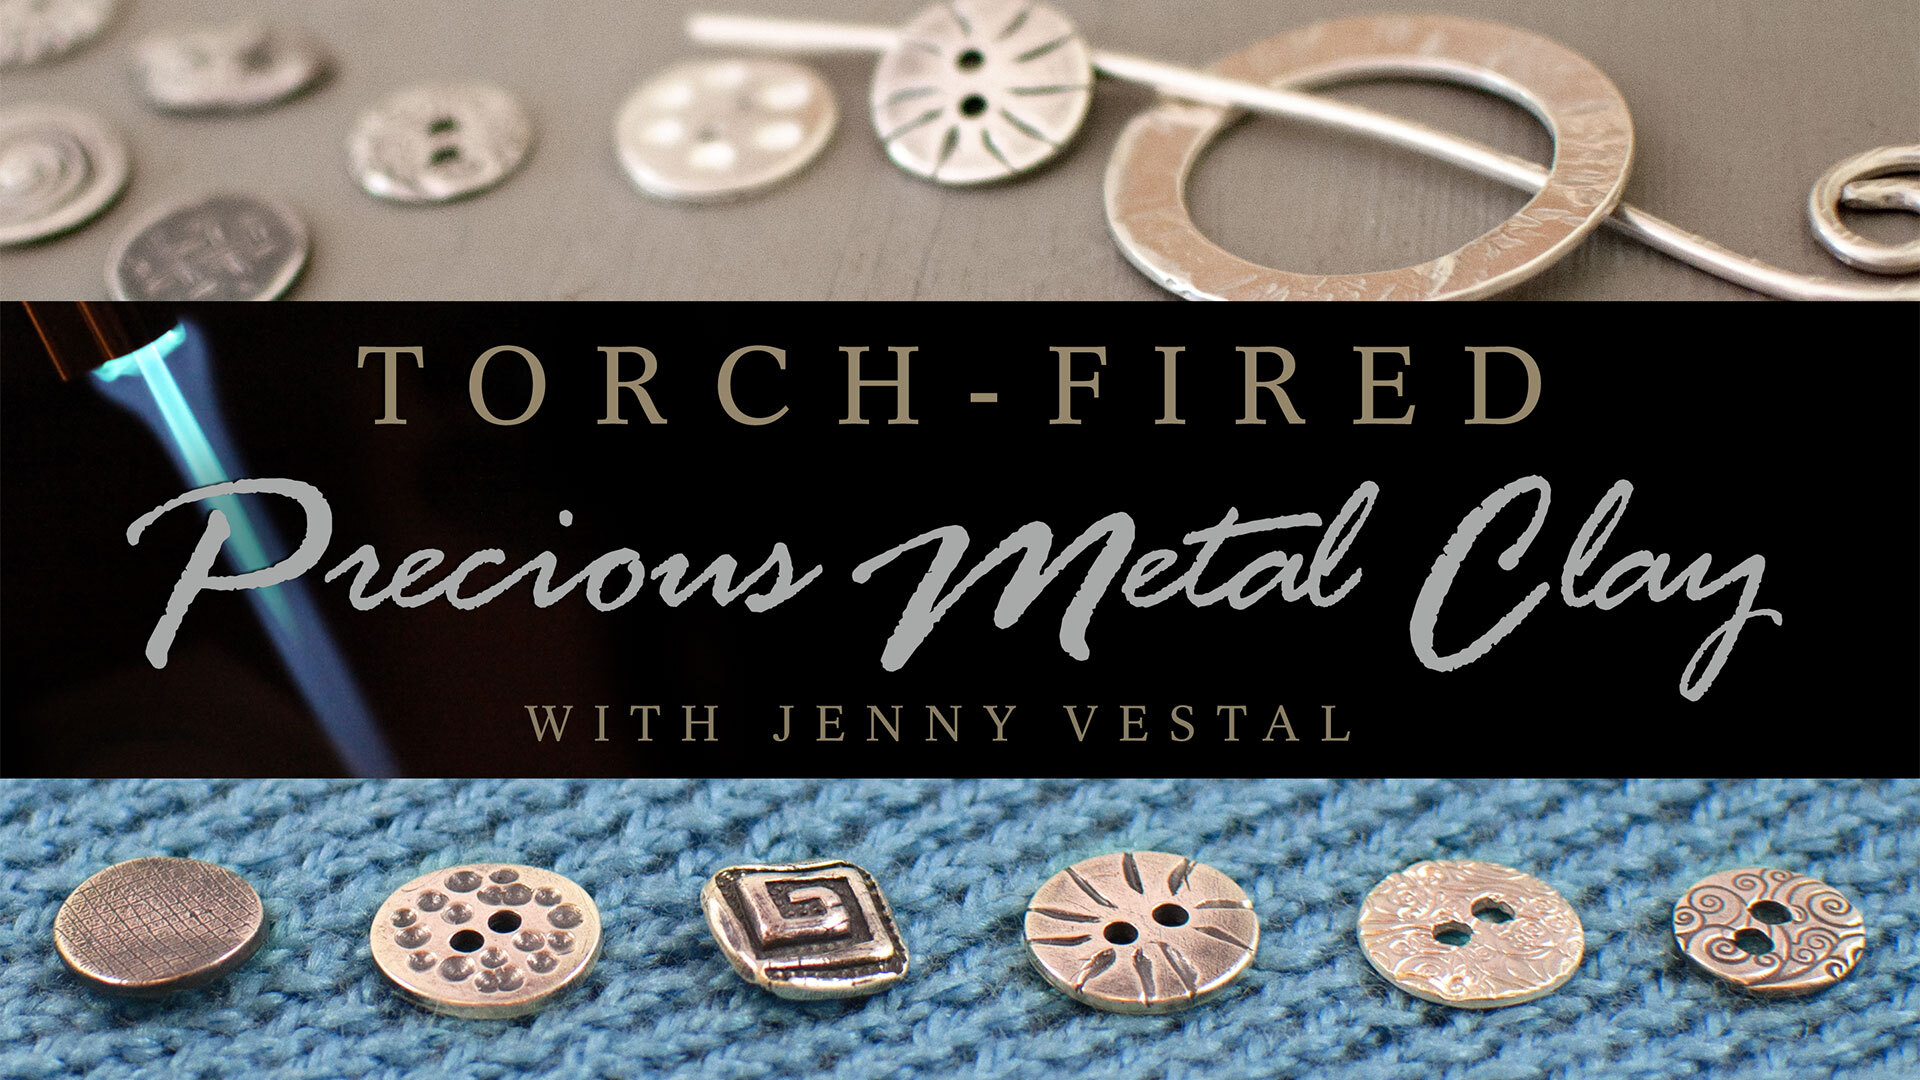 Nancy teaching Precious Metal Clay Jewelry!